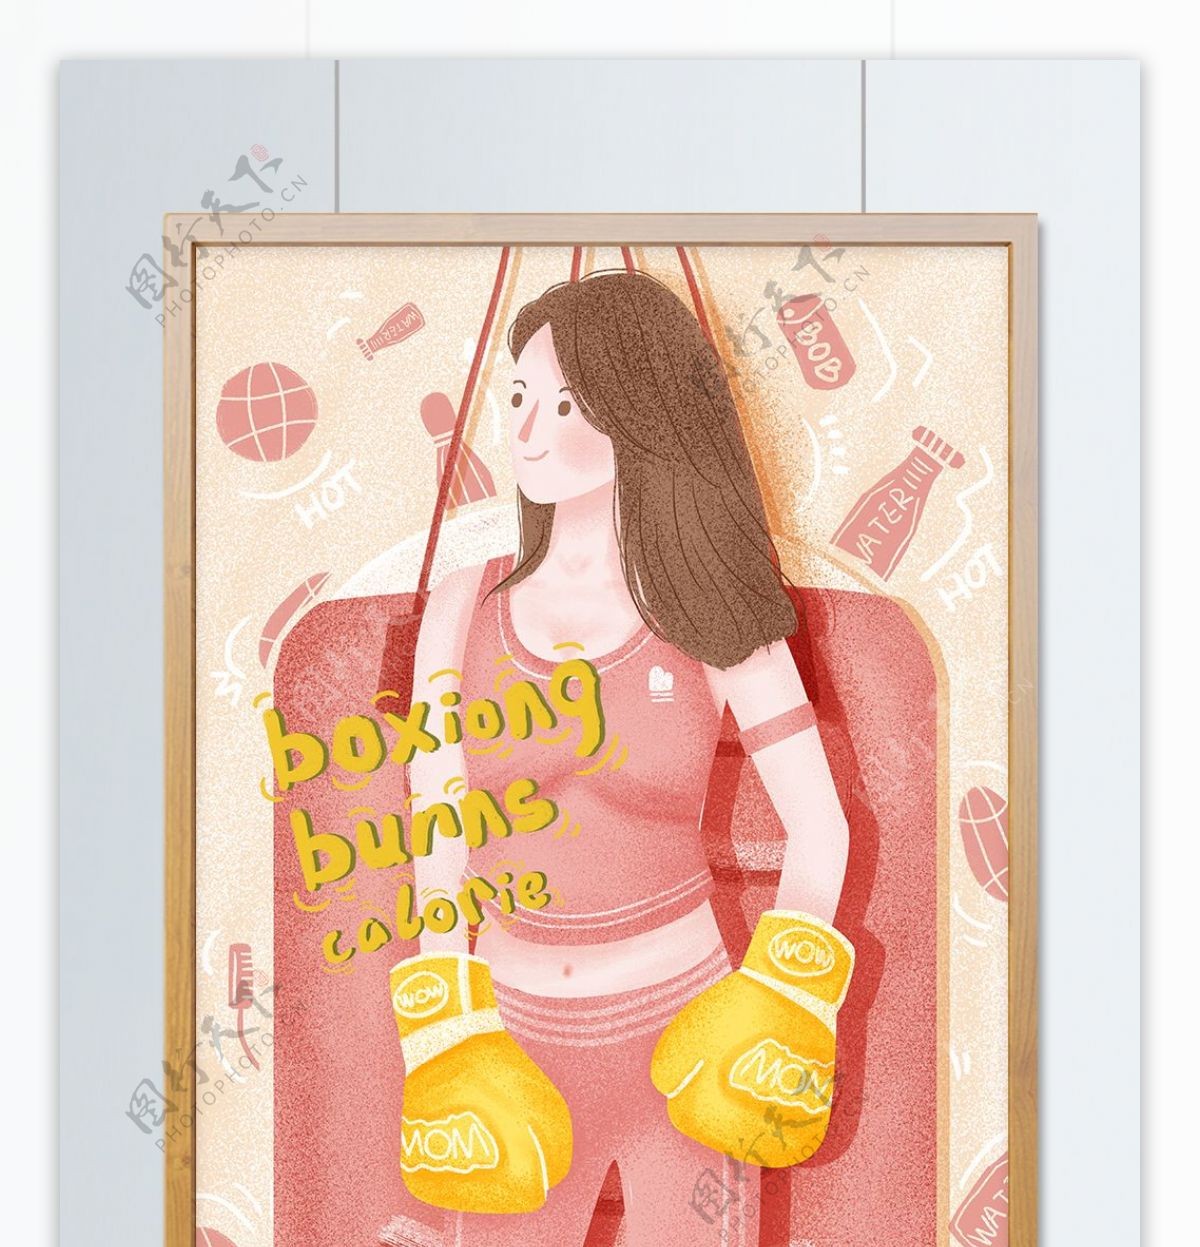 个性小姐姐健身拳击燃烧卡路里创意海报